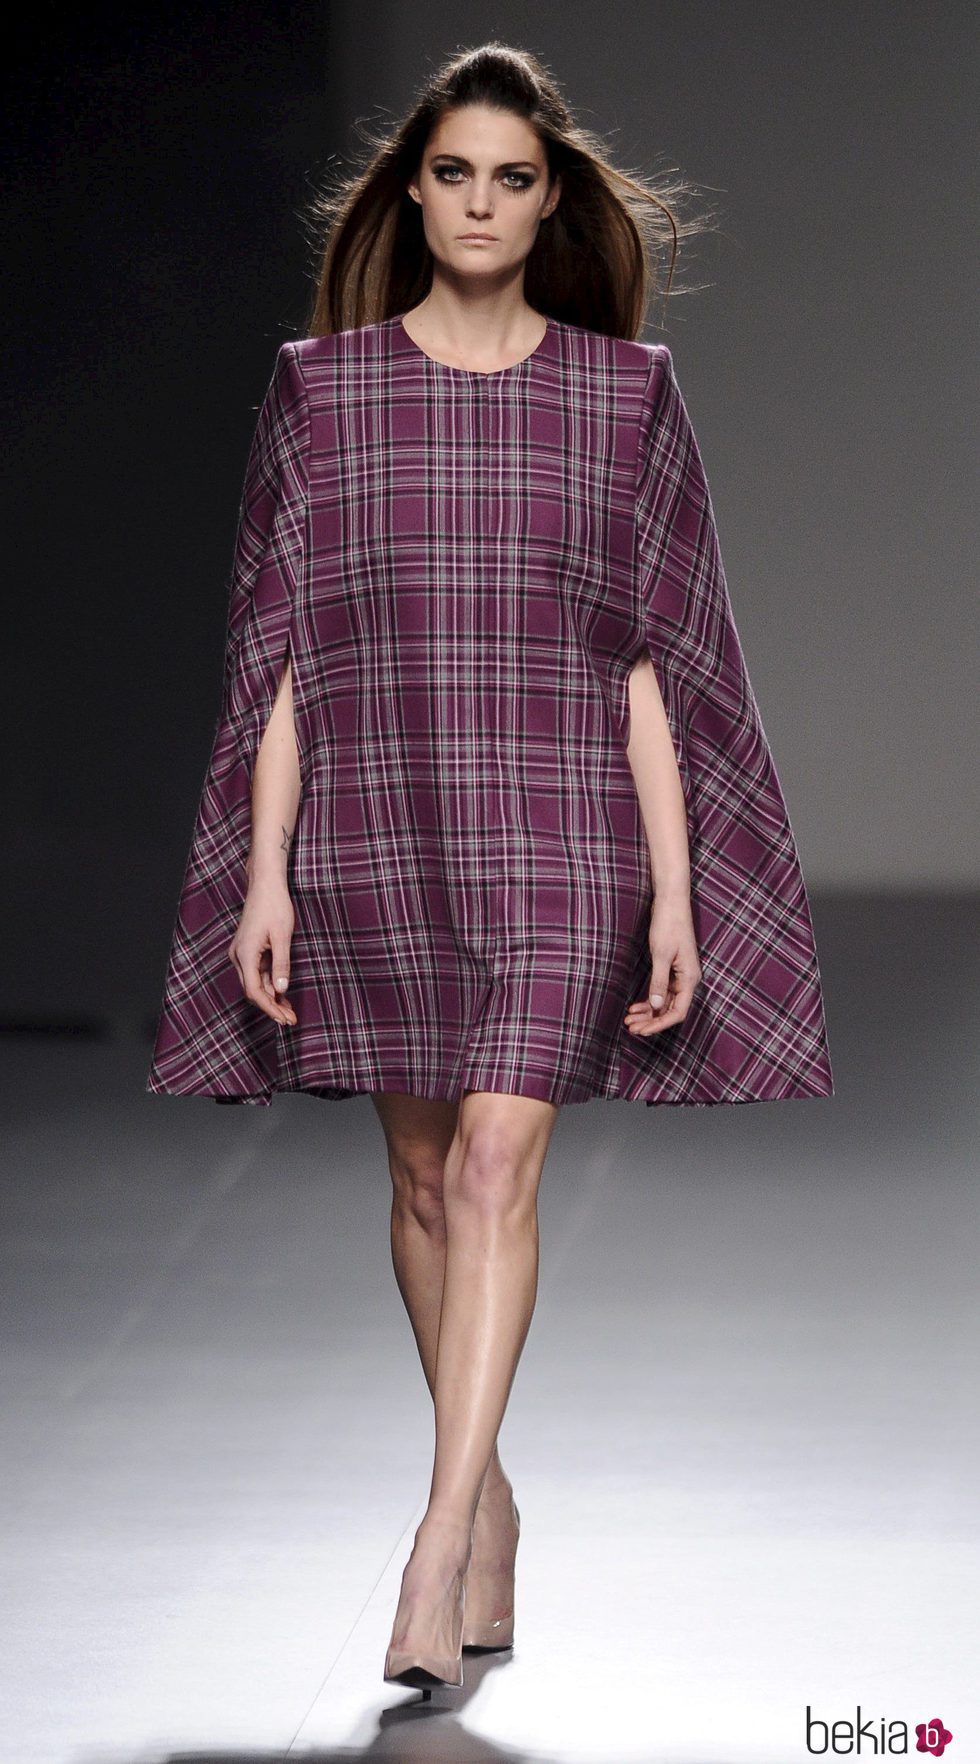 Vestido de estampado tartán de la colección otoño/invierno 2013/2014 de Teresa Helbig en Madrid Fashion Week